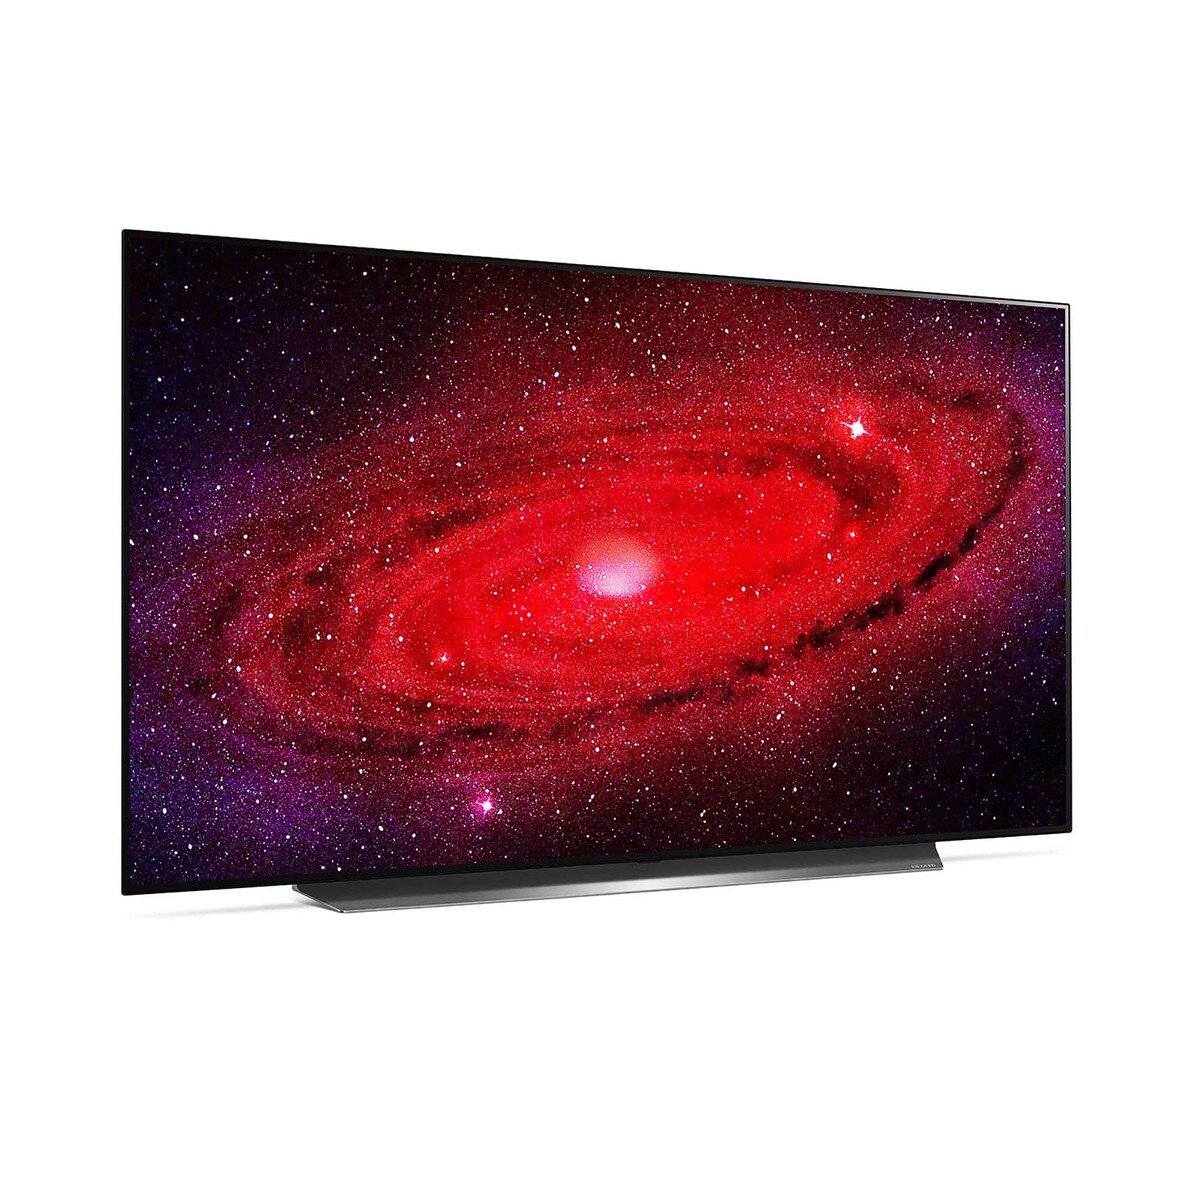 إل جي شاشة تلفزيون أو إل إي دي 65 بوصة من سلسلة (2020) 65CXPVA